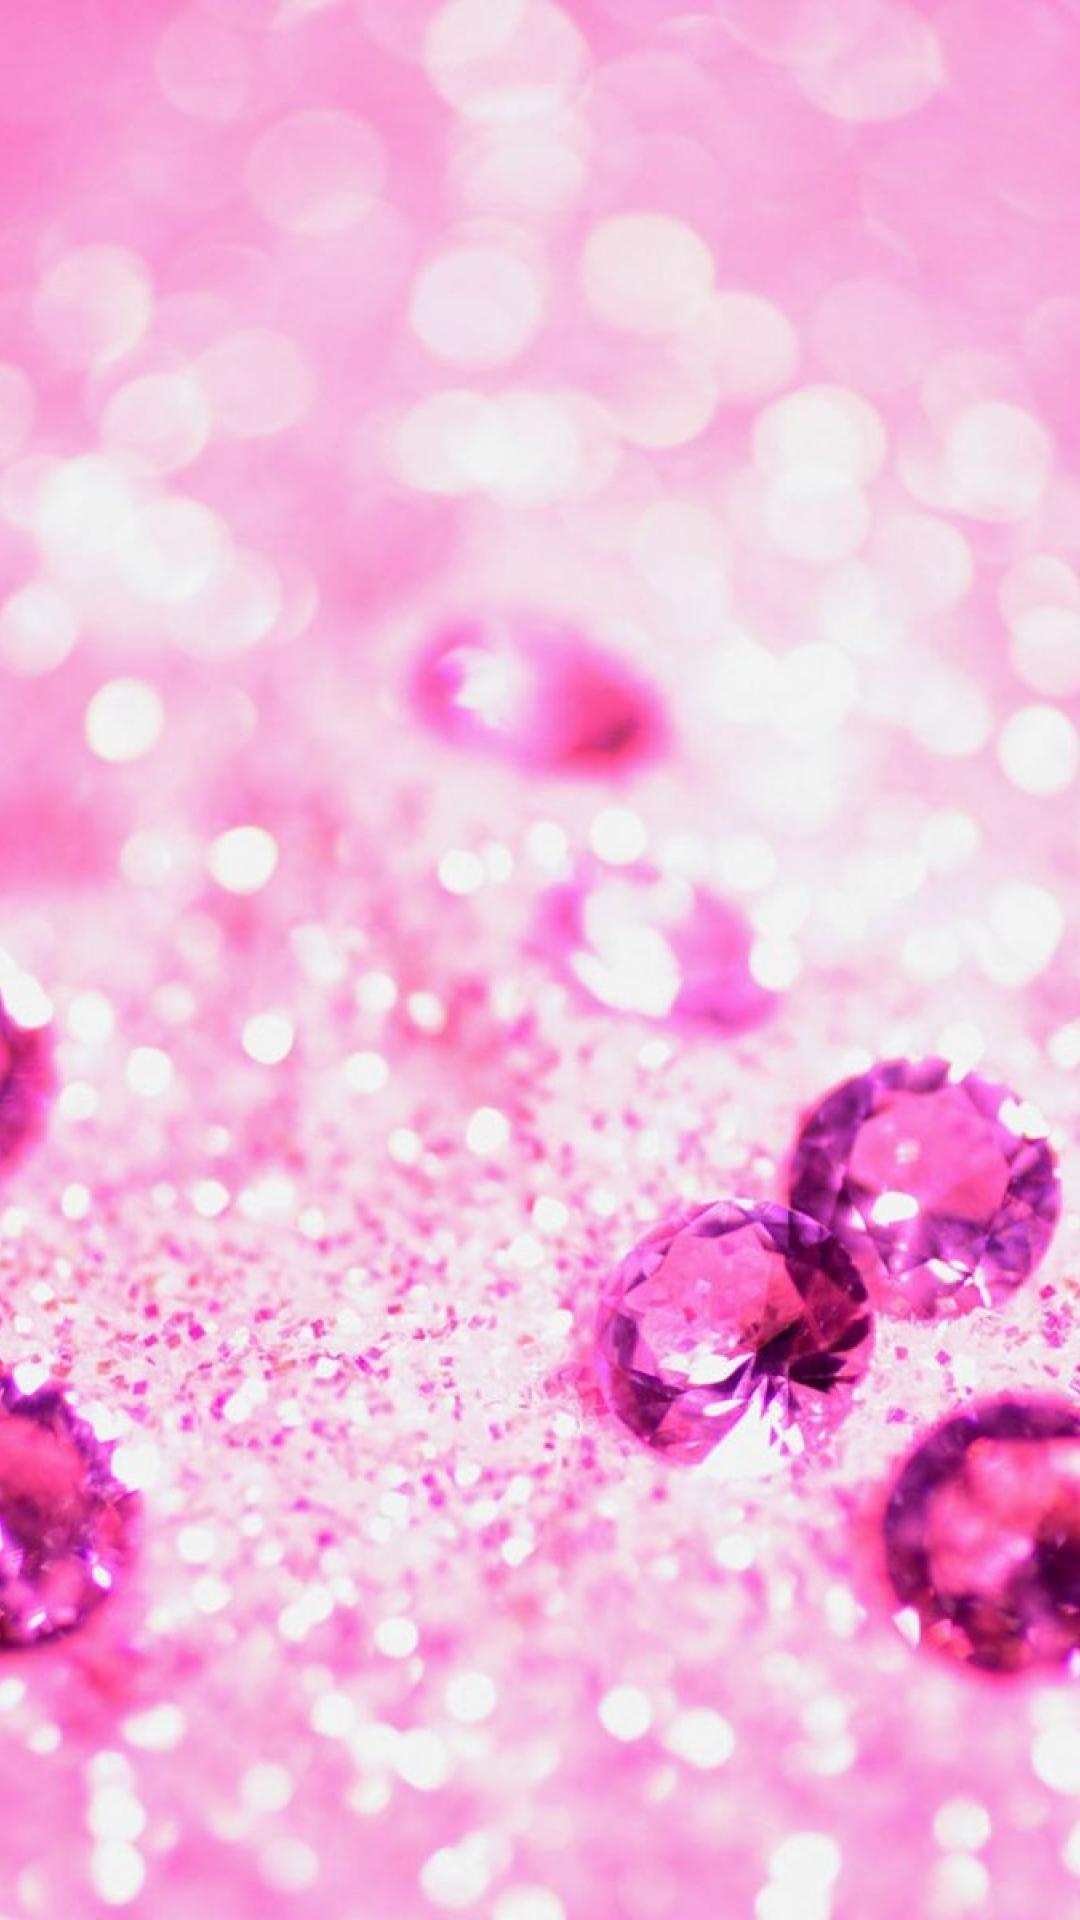 沢山のピンクの宝石 ガーリーなキラキラiphone壁紙 Iphone Wallpapers